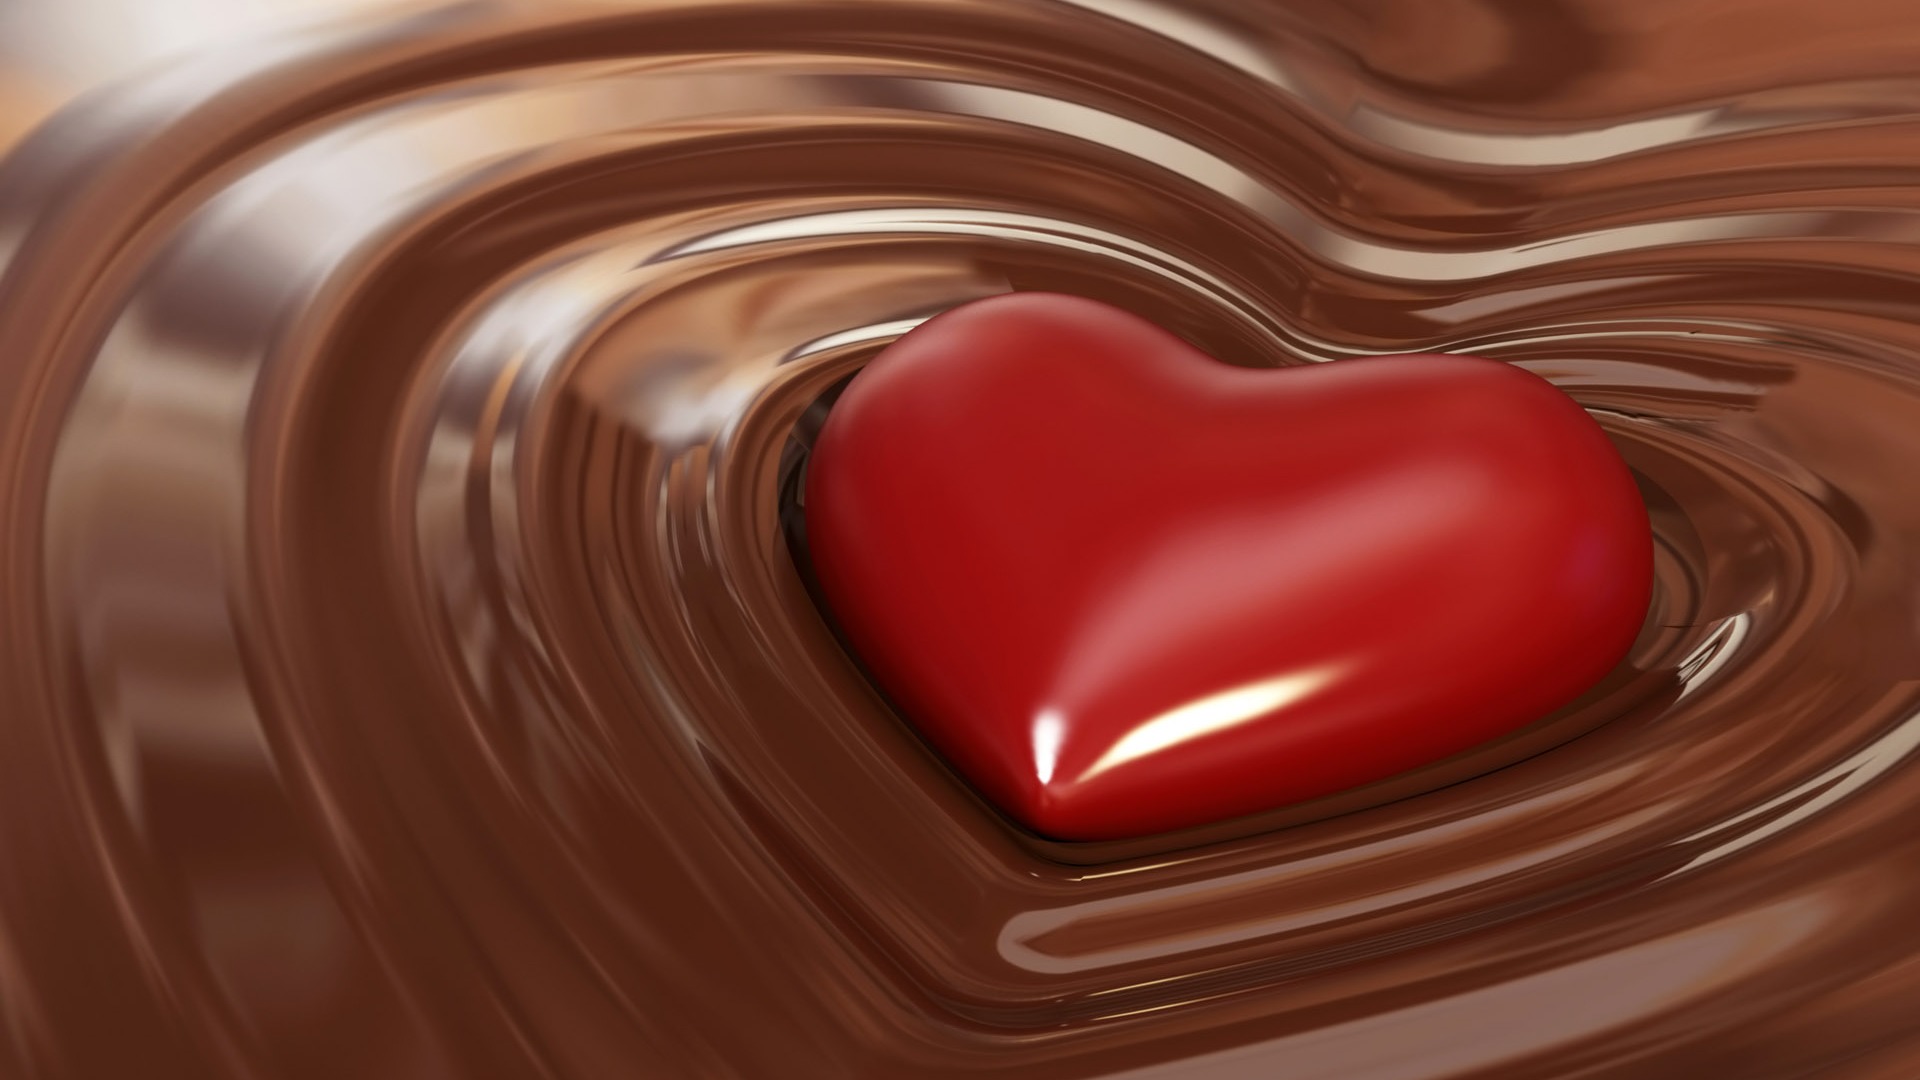 Chocolate plano de fondo (2) #11 - 1920x1080